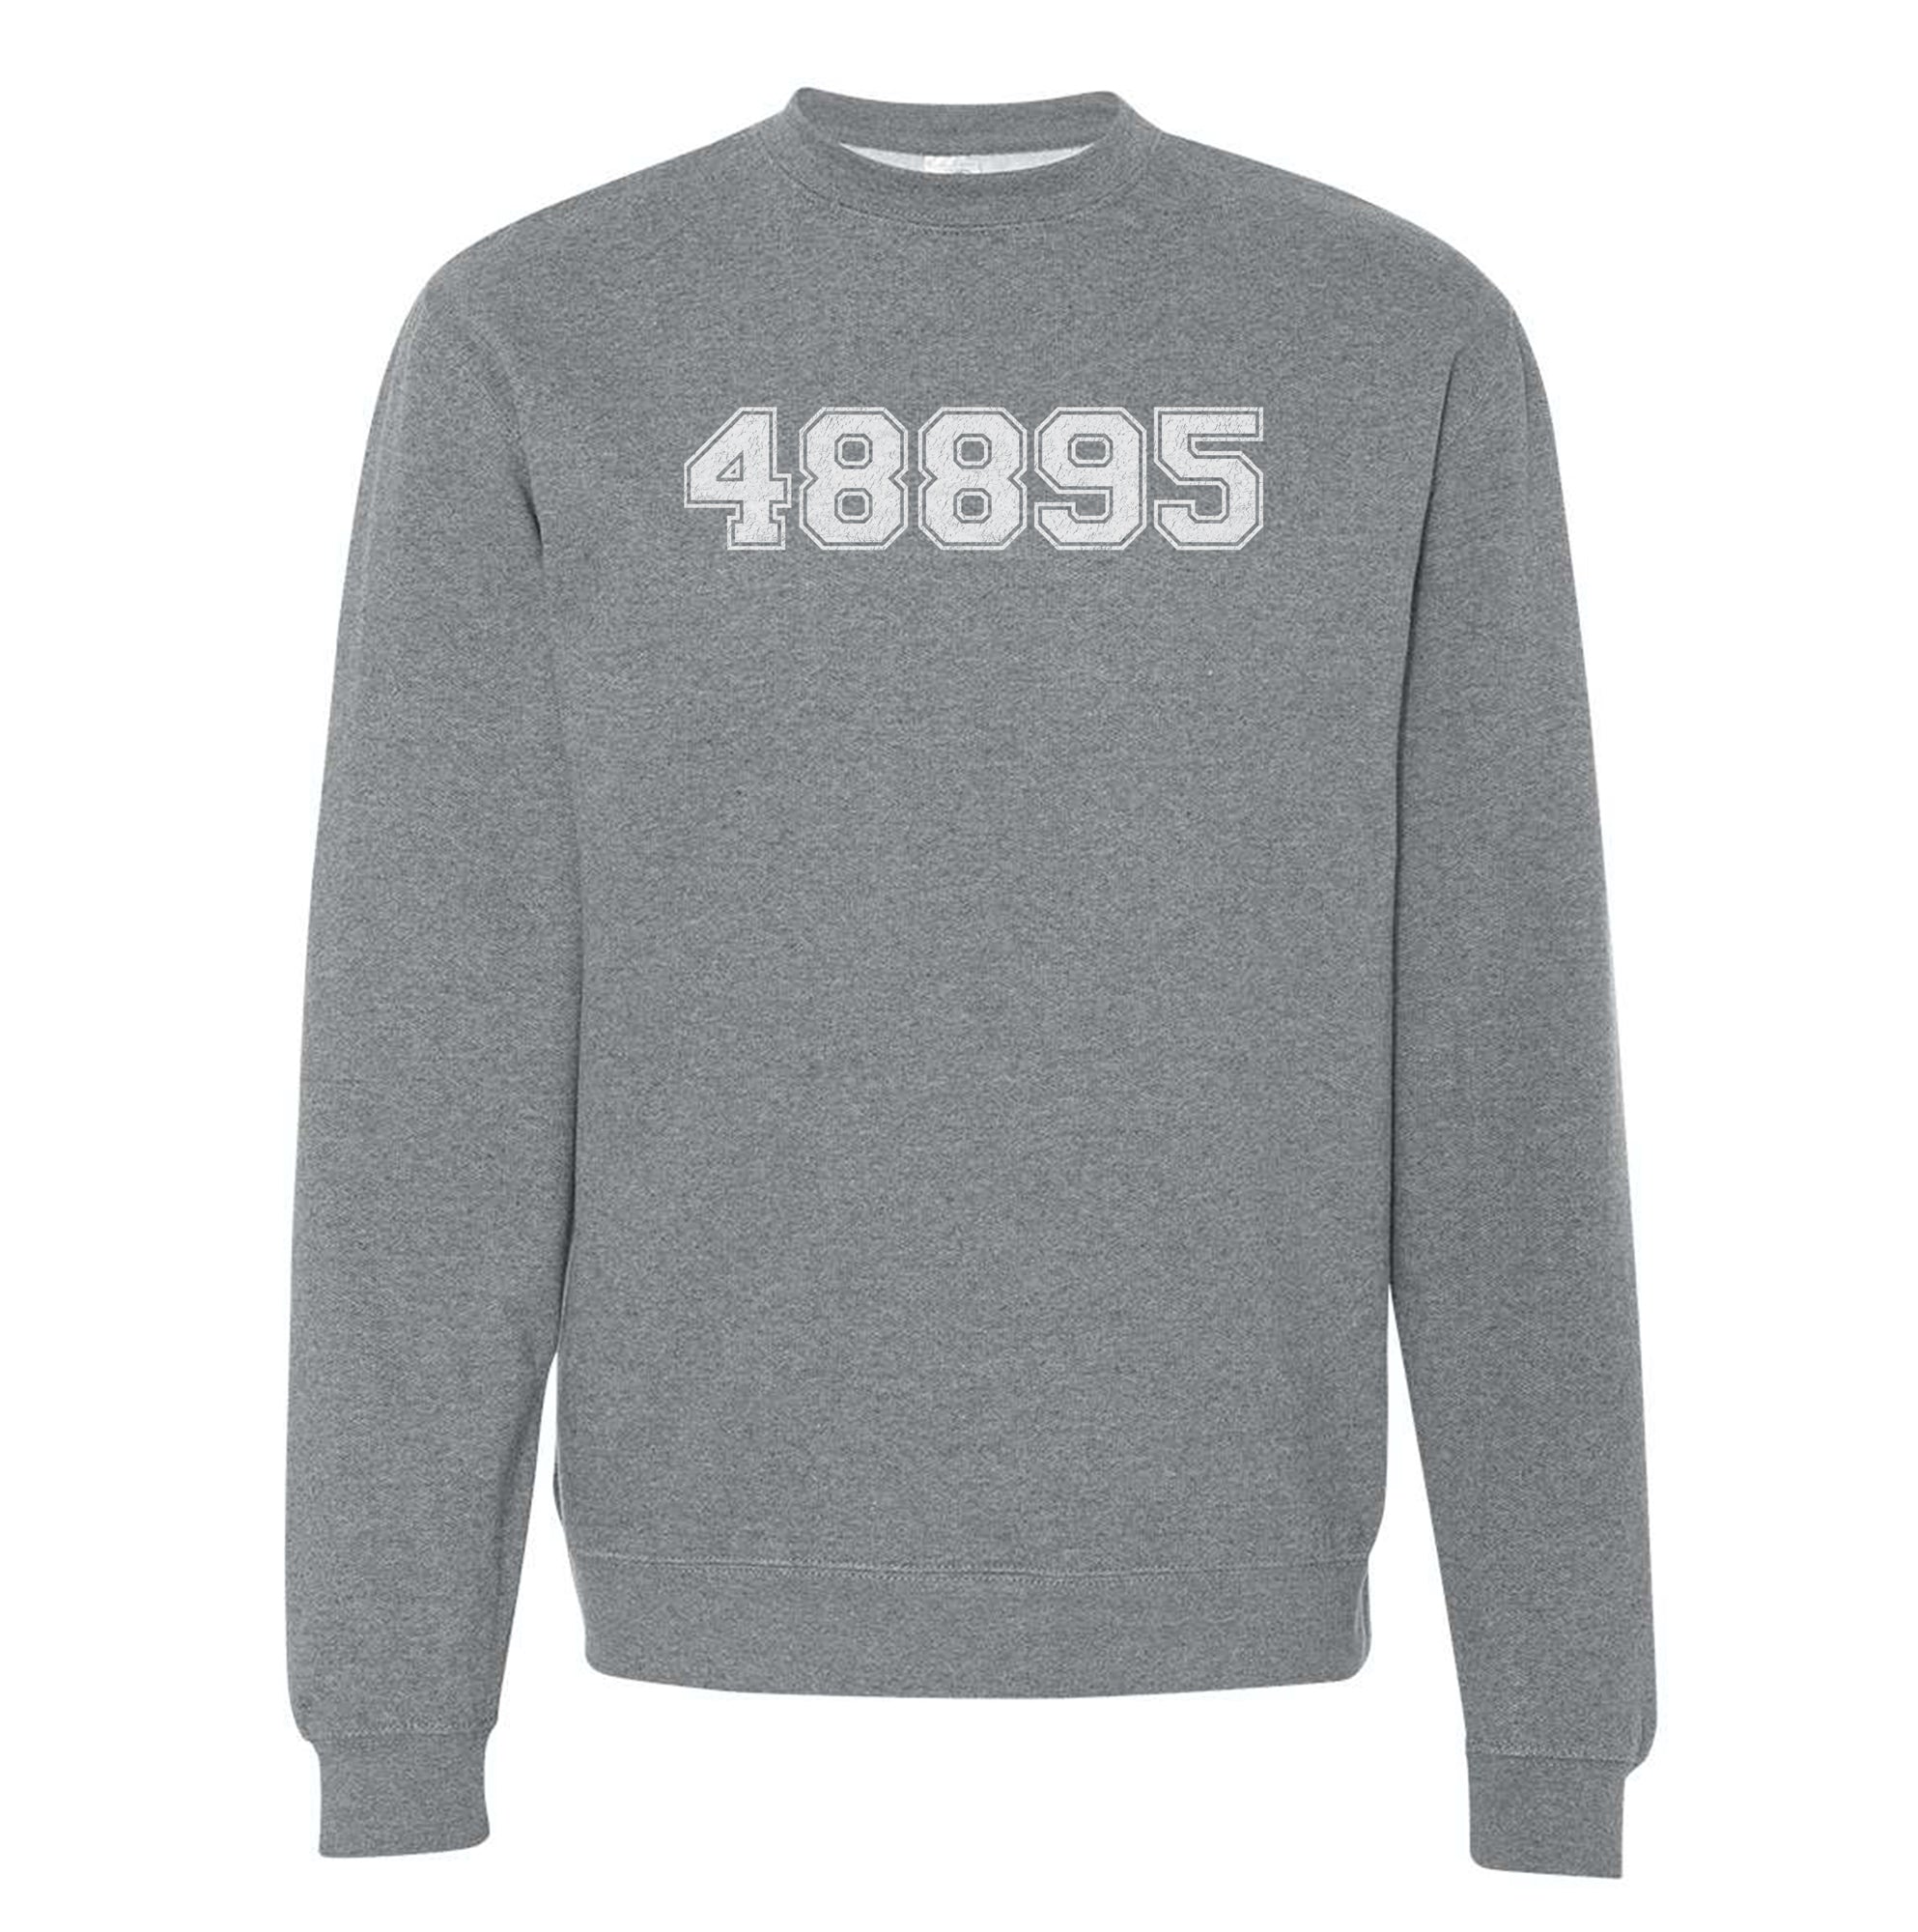 "48895" Vintage Adult Sweater